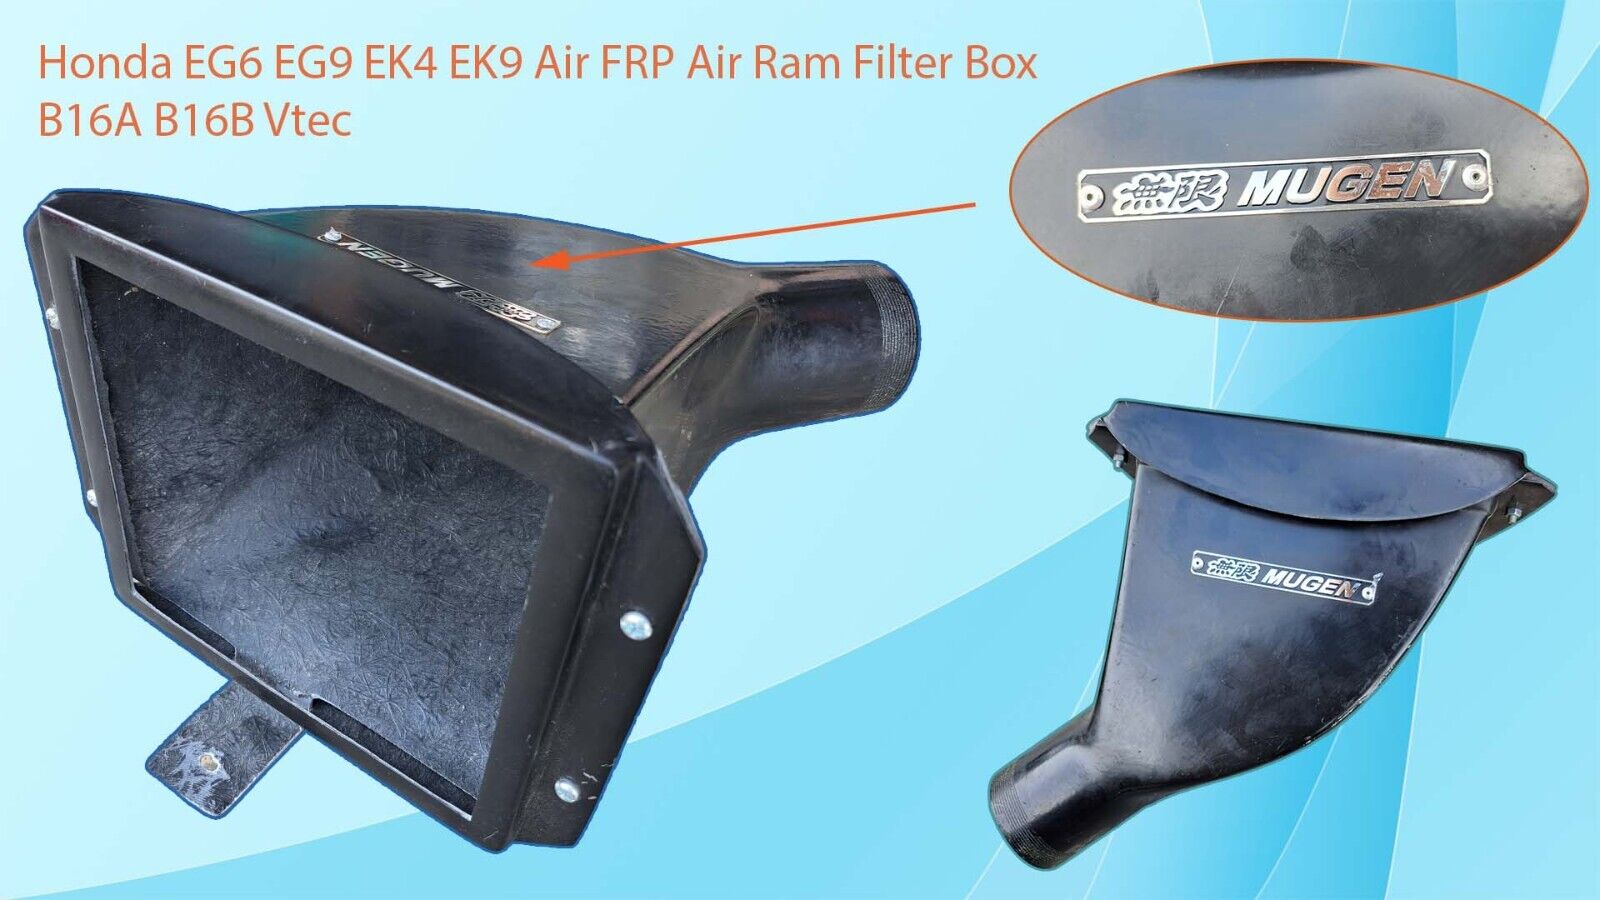 Air Filter Box Mugen Style Airbox For Honda Civic EG6 EG9 EK4 EK9 FRP B16A 92-00